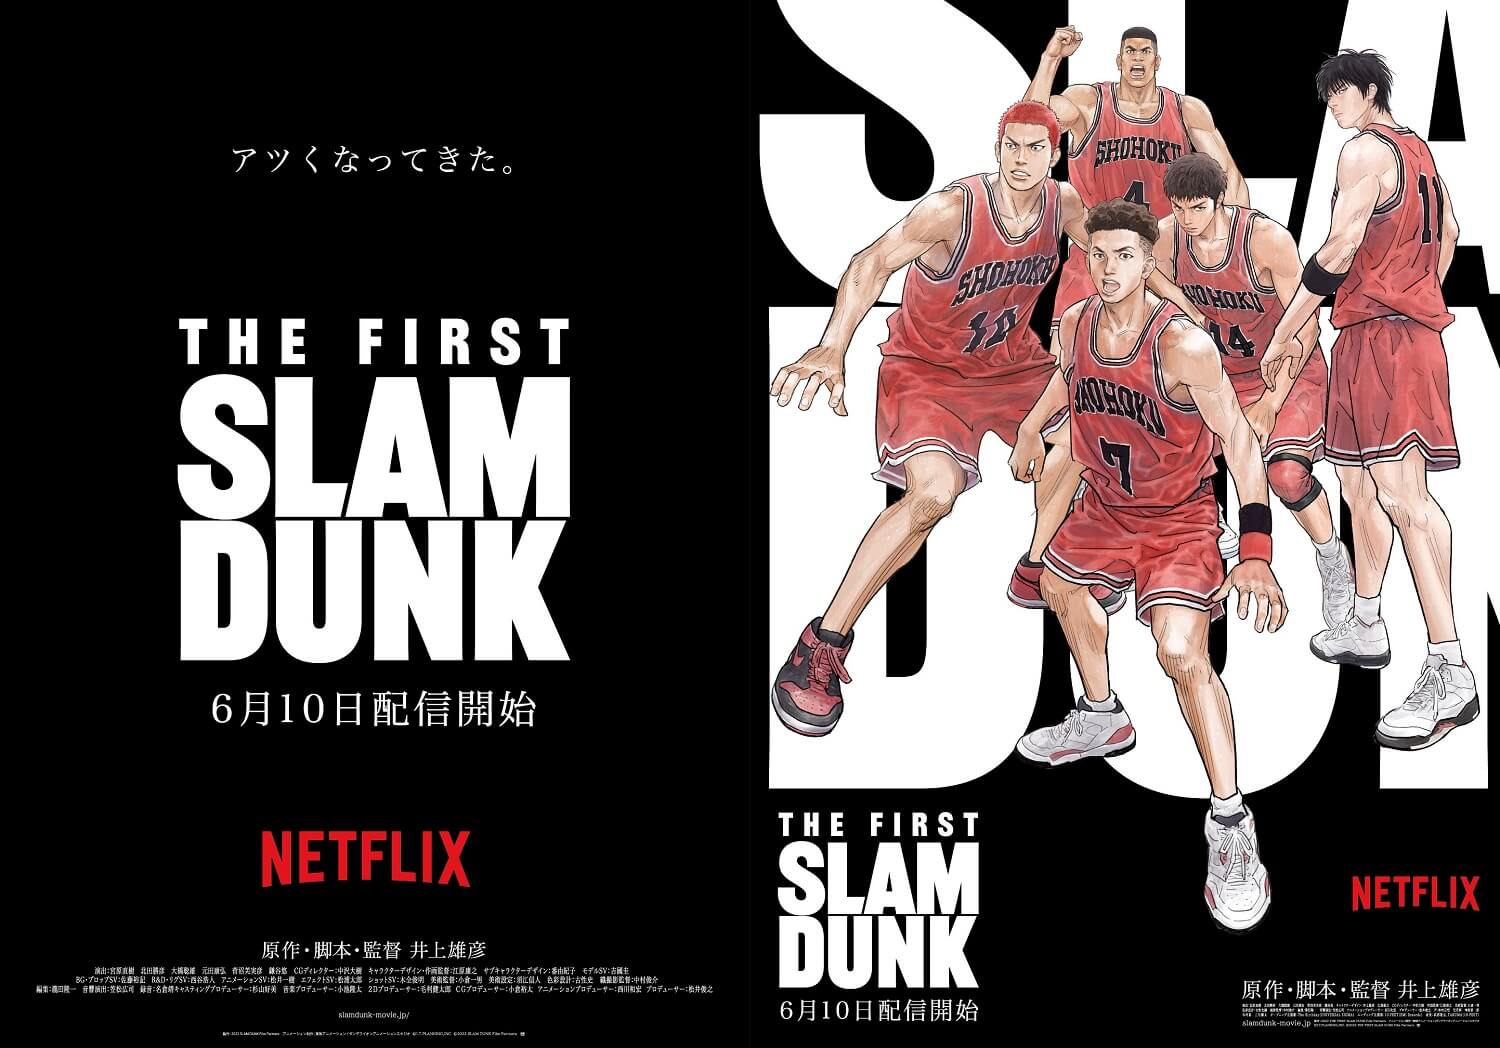 6月10日からNetflixにてスラムダンクの映画『THE FIRST SLAM DUNK』が配信決定